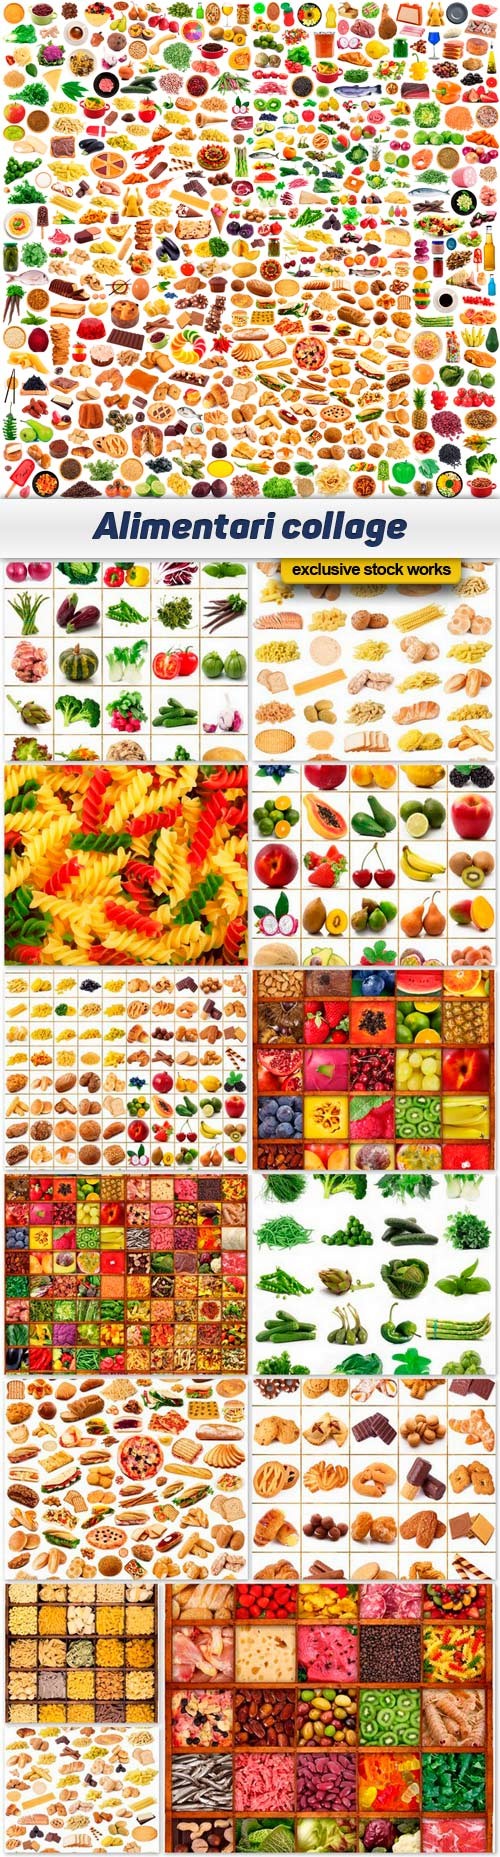 Alimentari collage - 15 UHQ JPEG